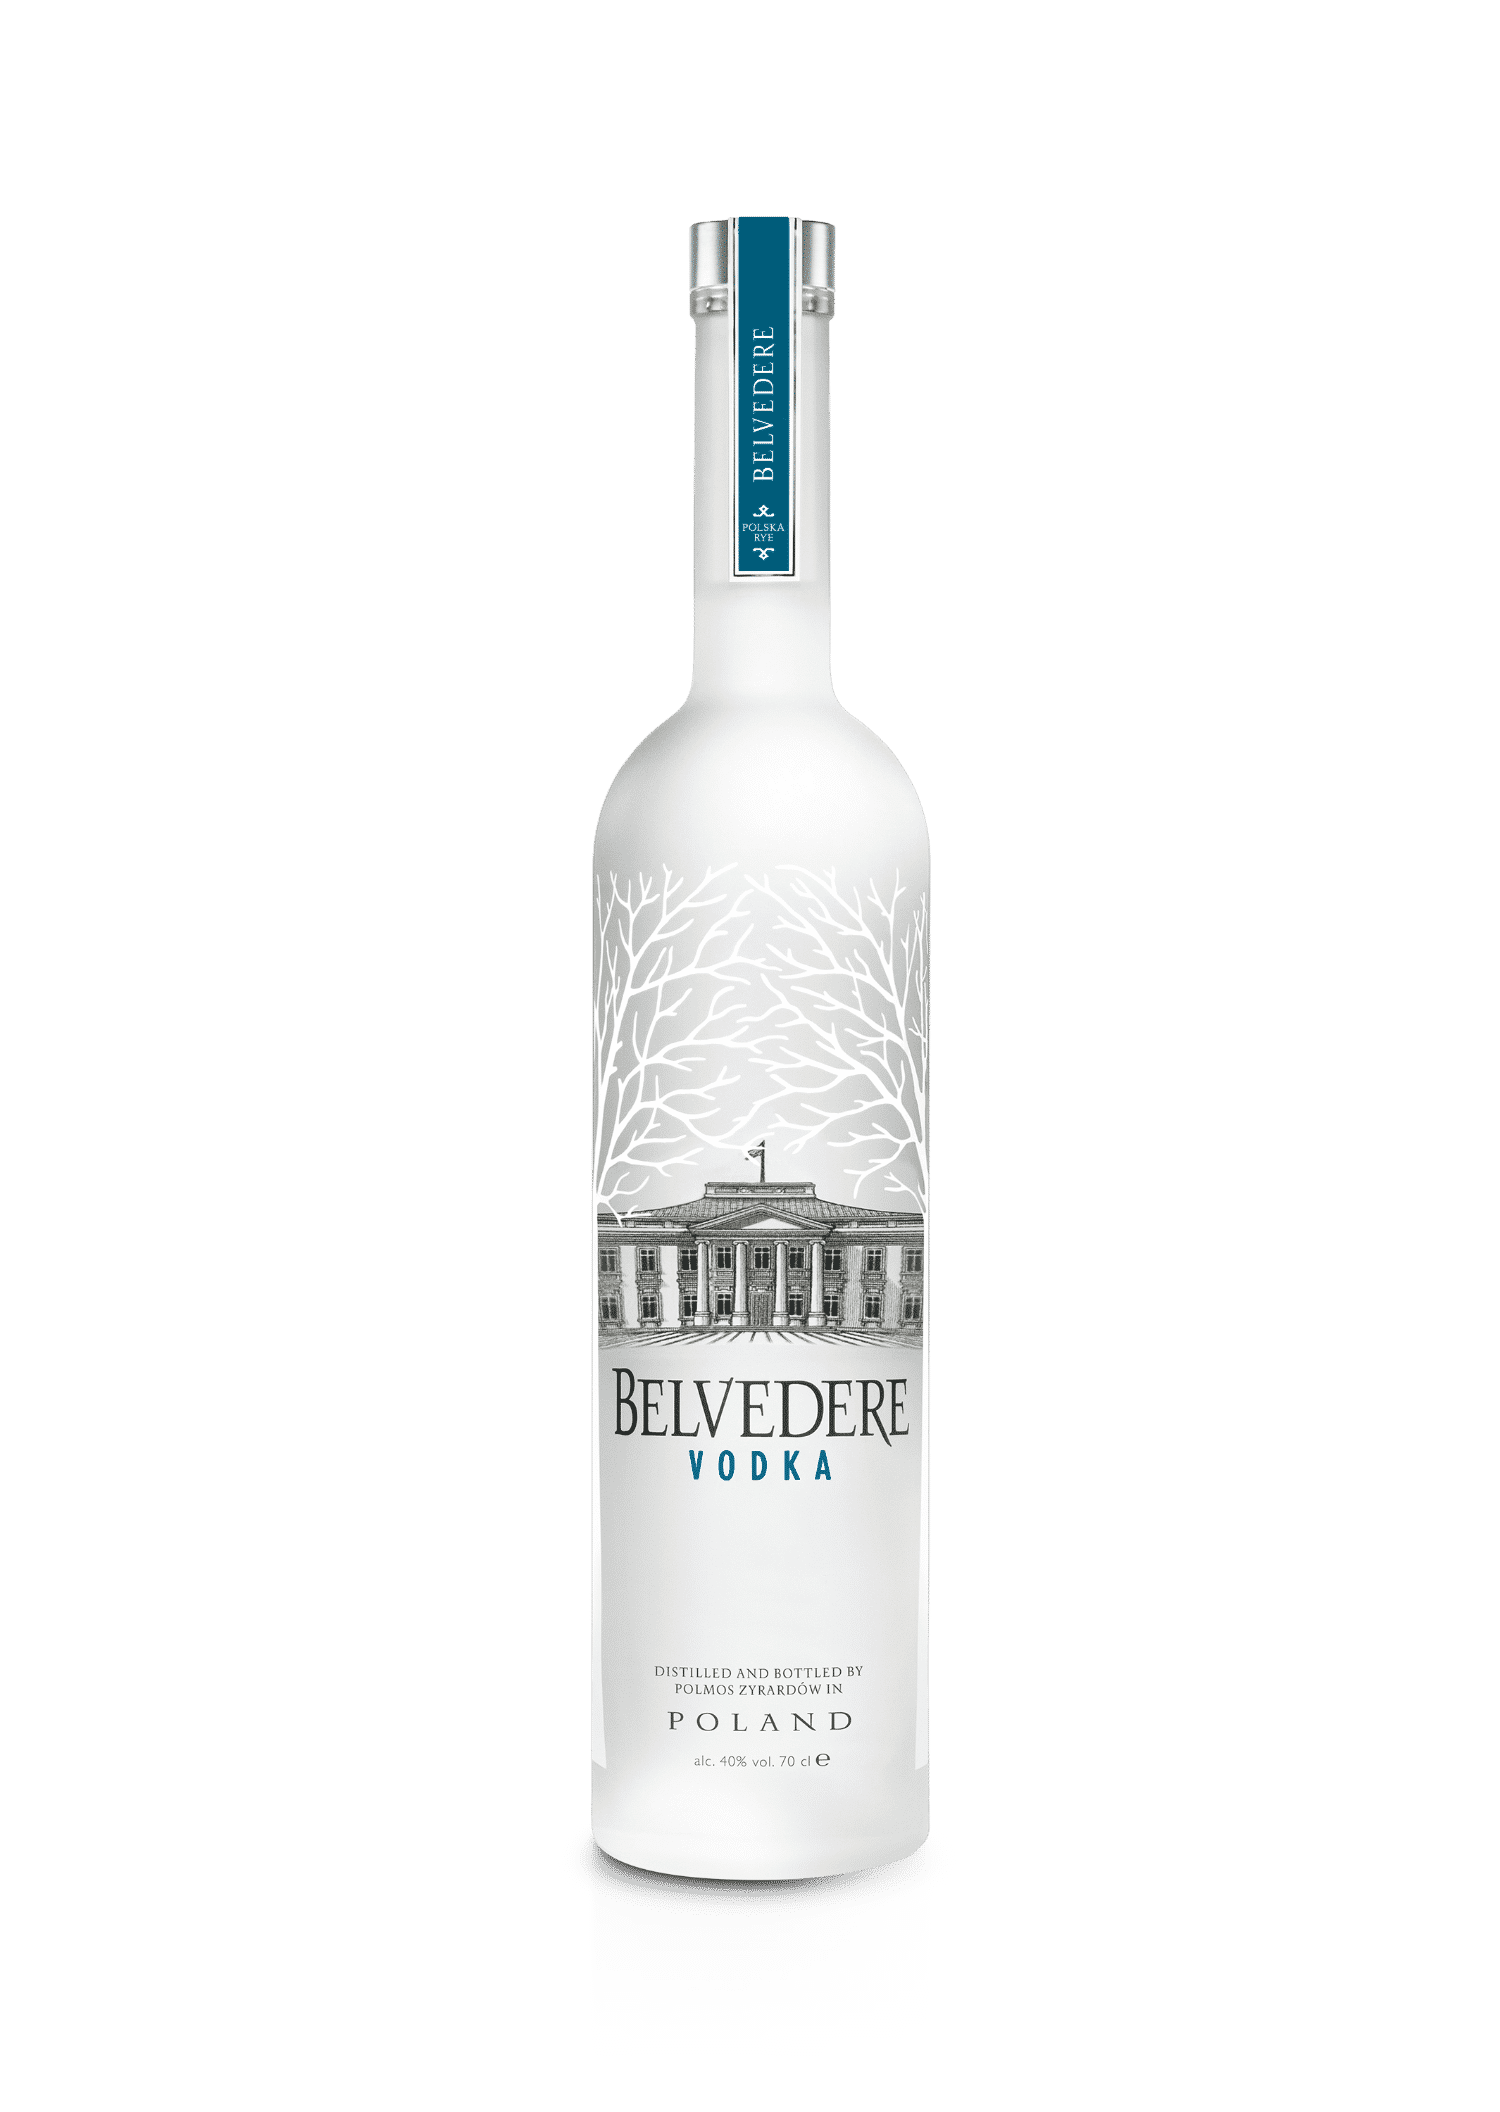 https://infinities-wines.com/wp-content/uploads/2021/05/vodka-belvedere-infinities-wines.png